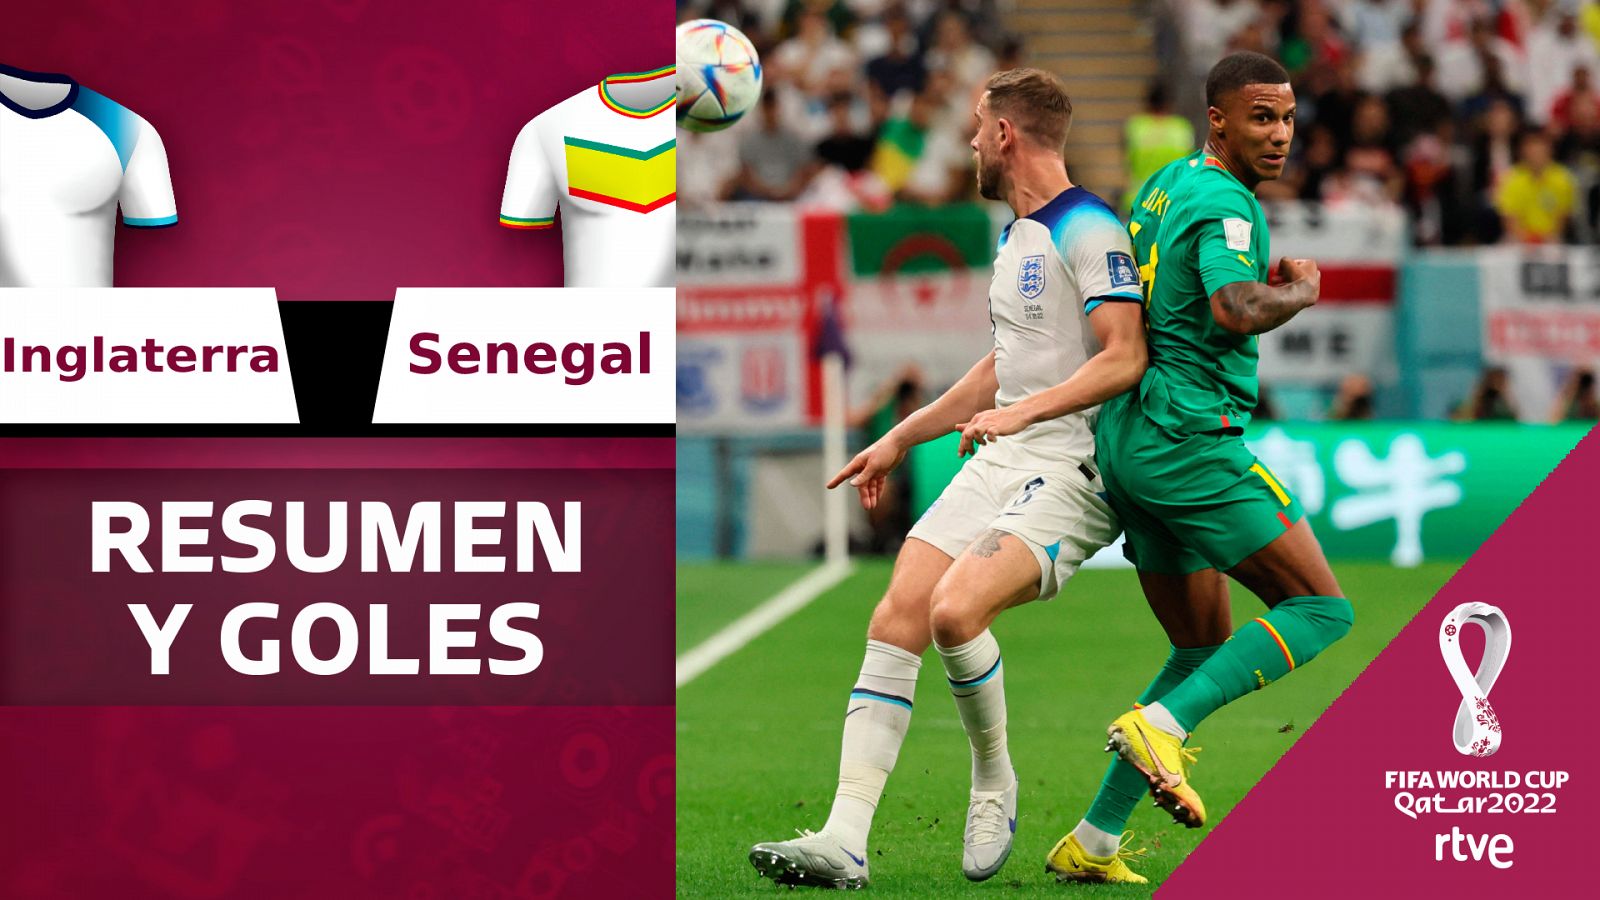 Inglaterra - Senegal: Resumen y goles en vídeo